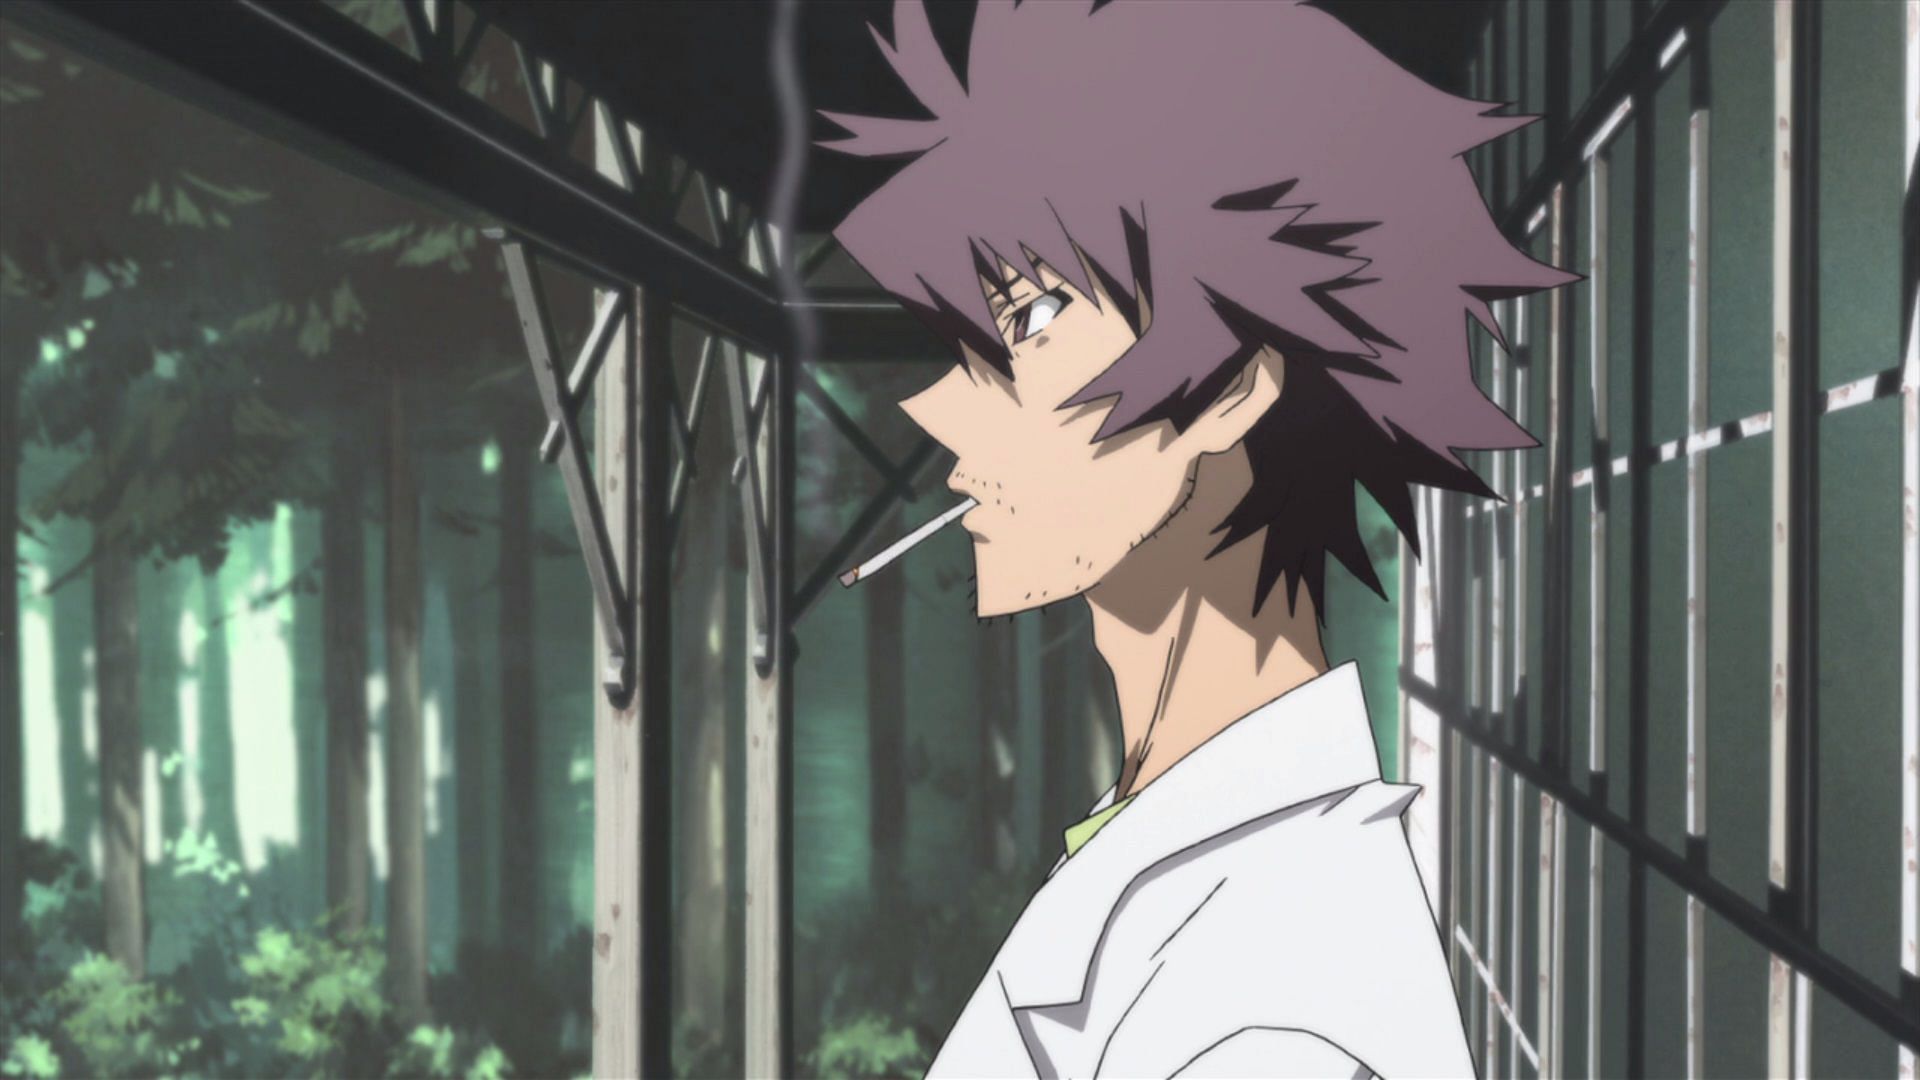 Toshio Ozaki as shown in the anime (Image via Shiki)